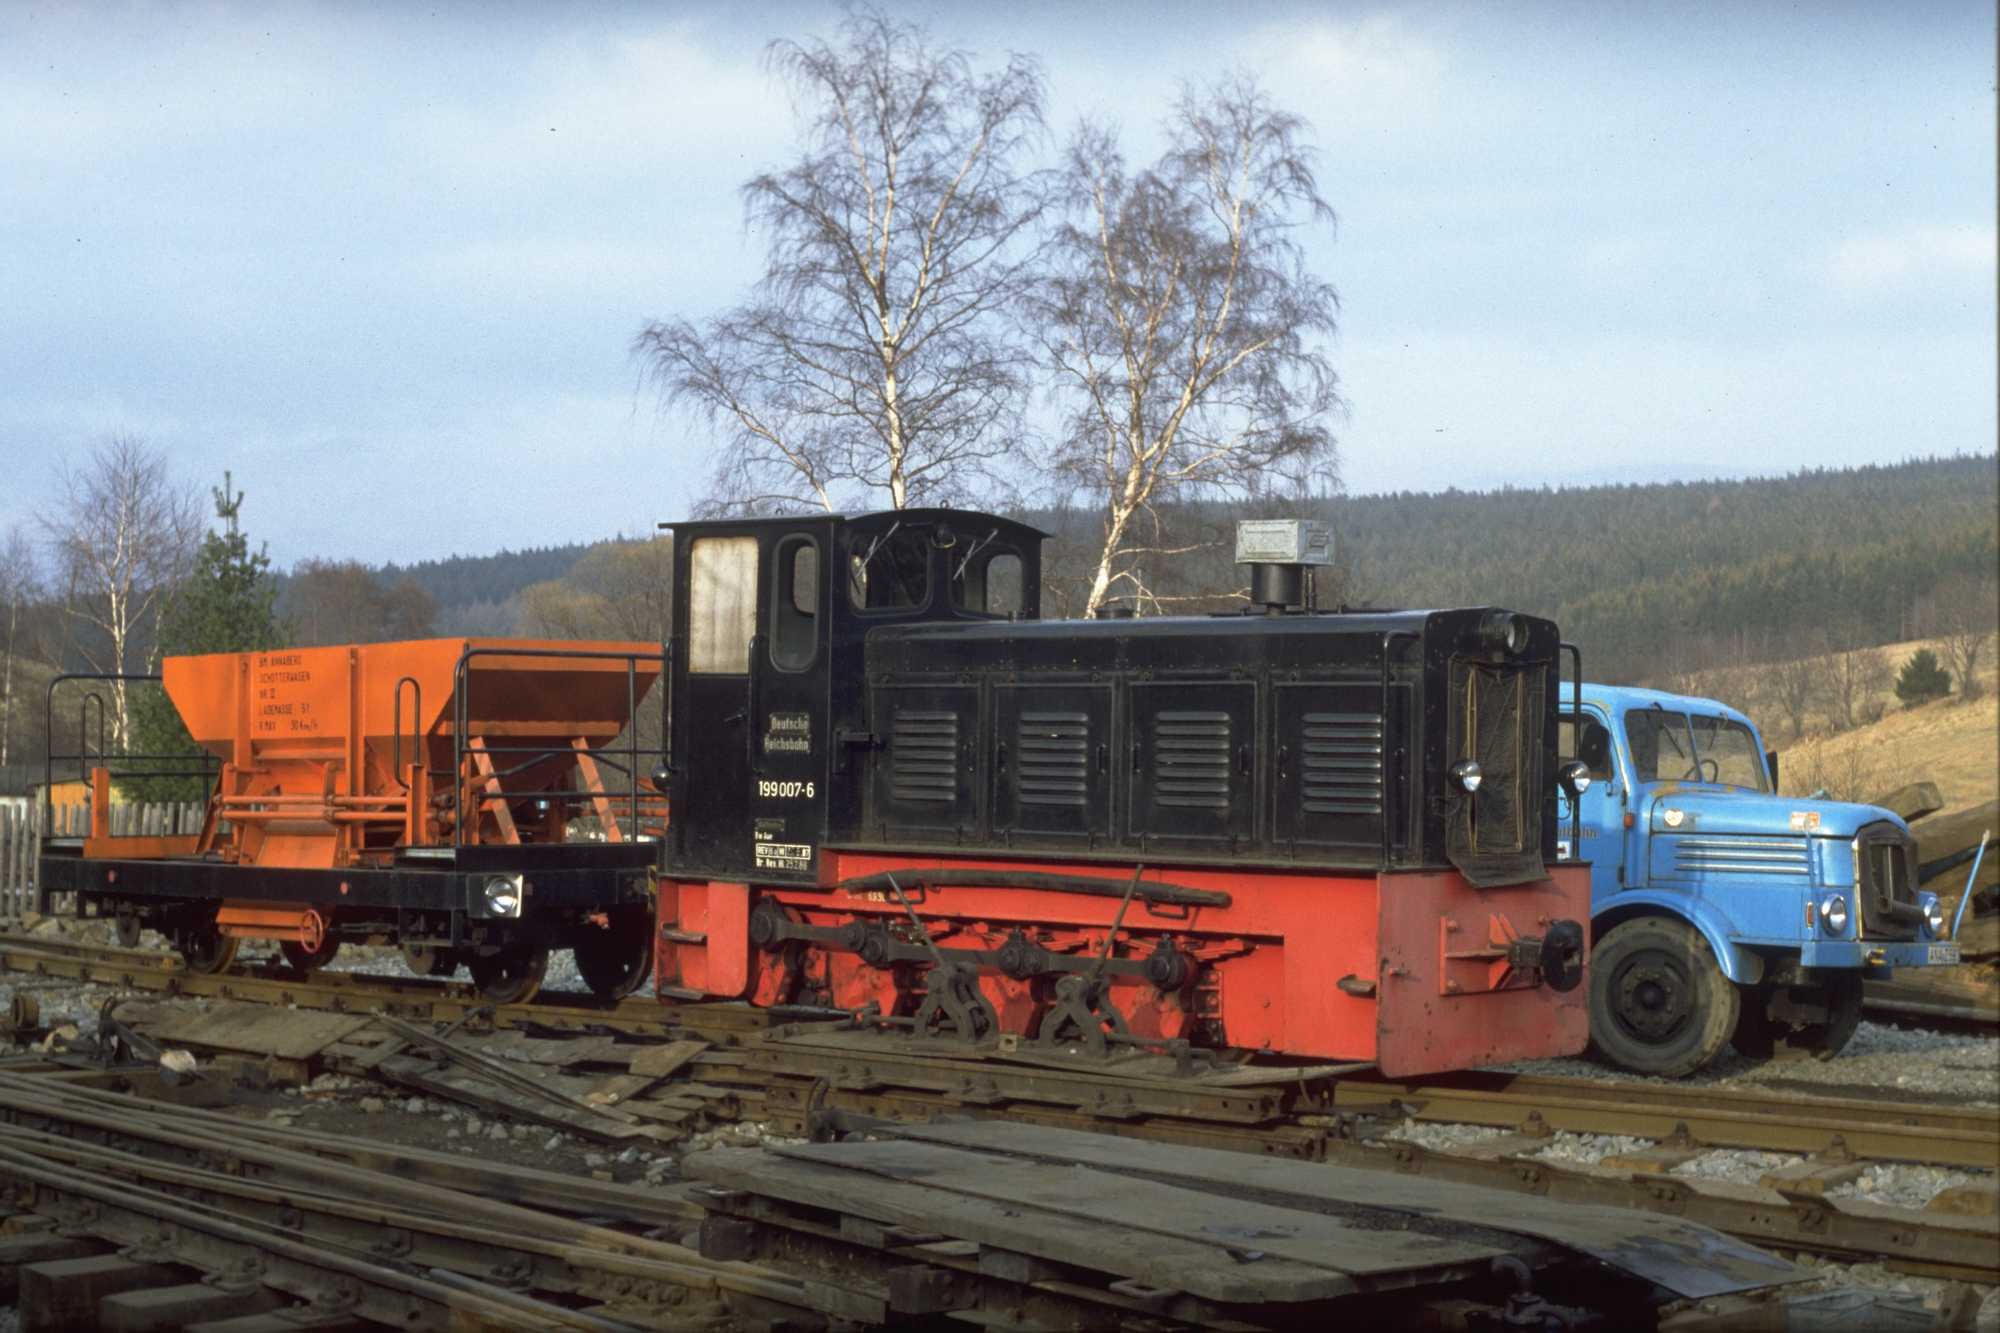 22.11.1992. Arbeitspause für 199 007 mit dem Schotterwagen, dahinter der S4000. Foto: Sammlung IG Preßnitztalbahn e.V.